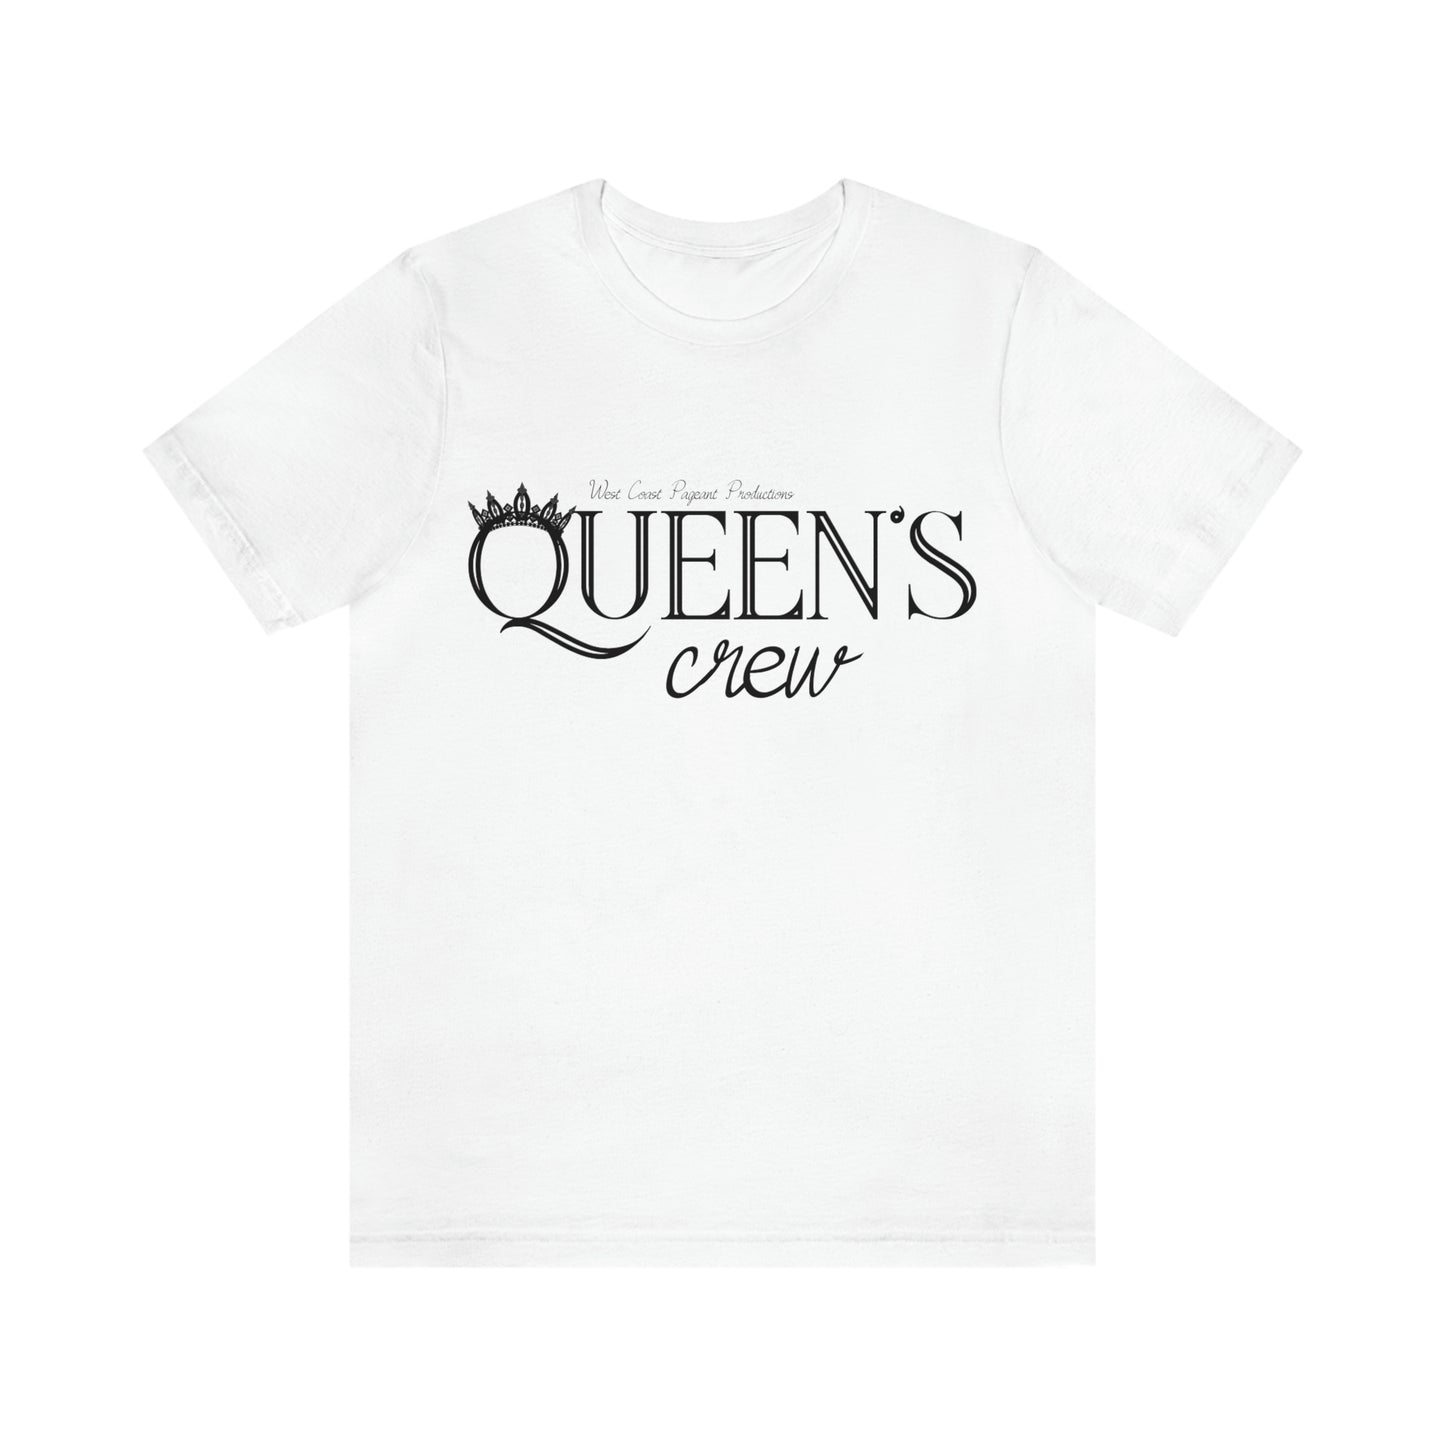 Queen's Crew - Unisex Tee